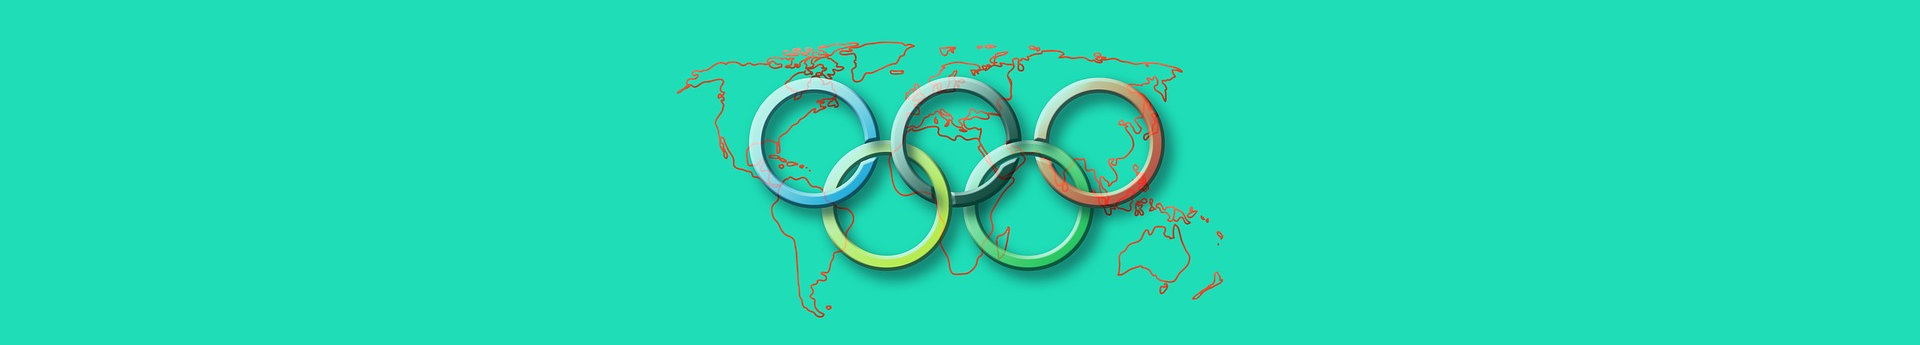 Historia letnich igrzysk olimpijskich